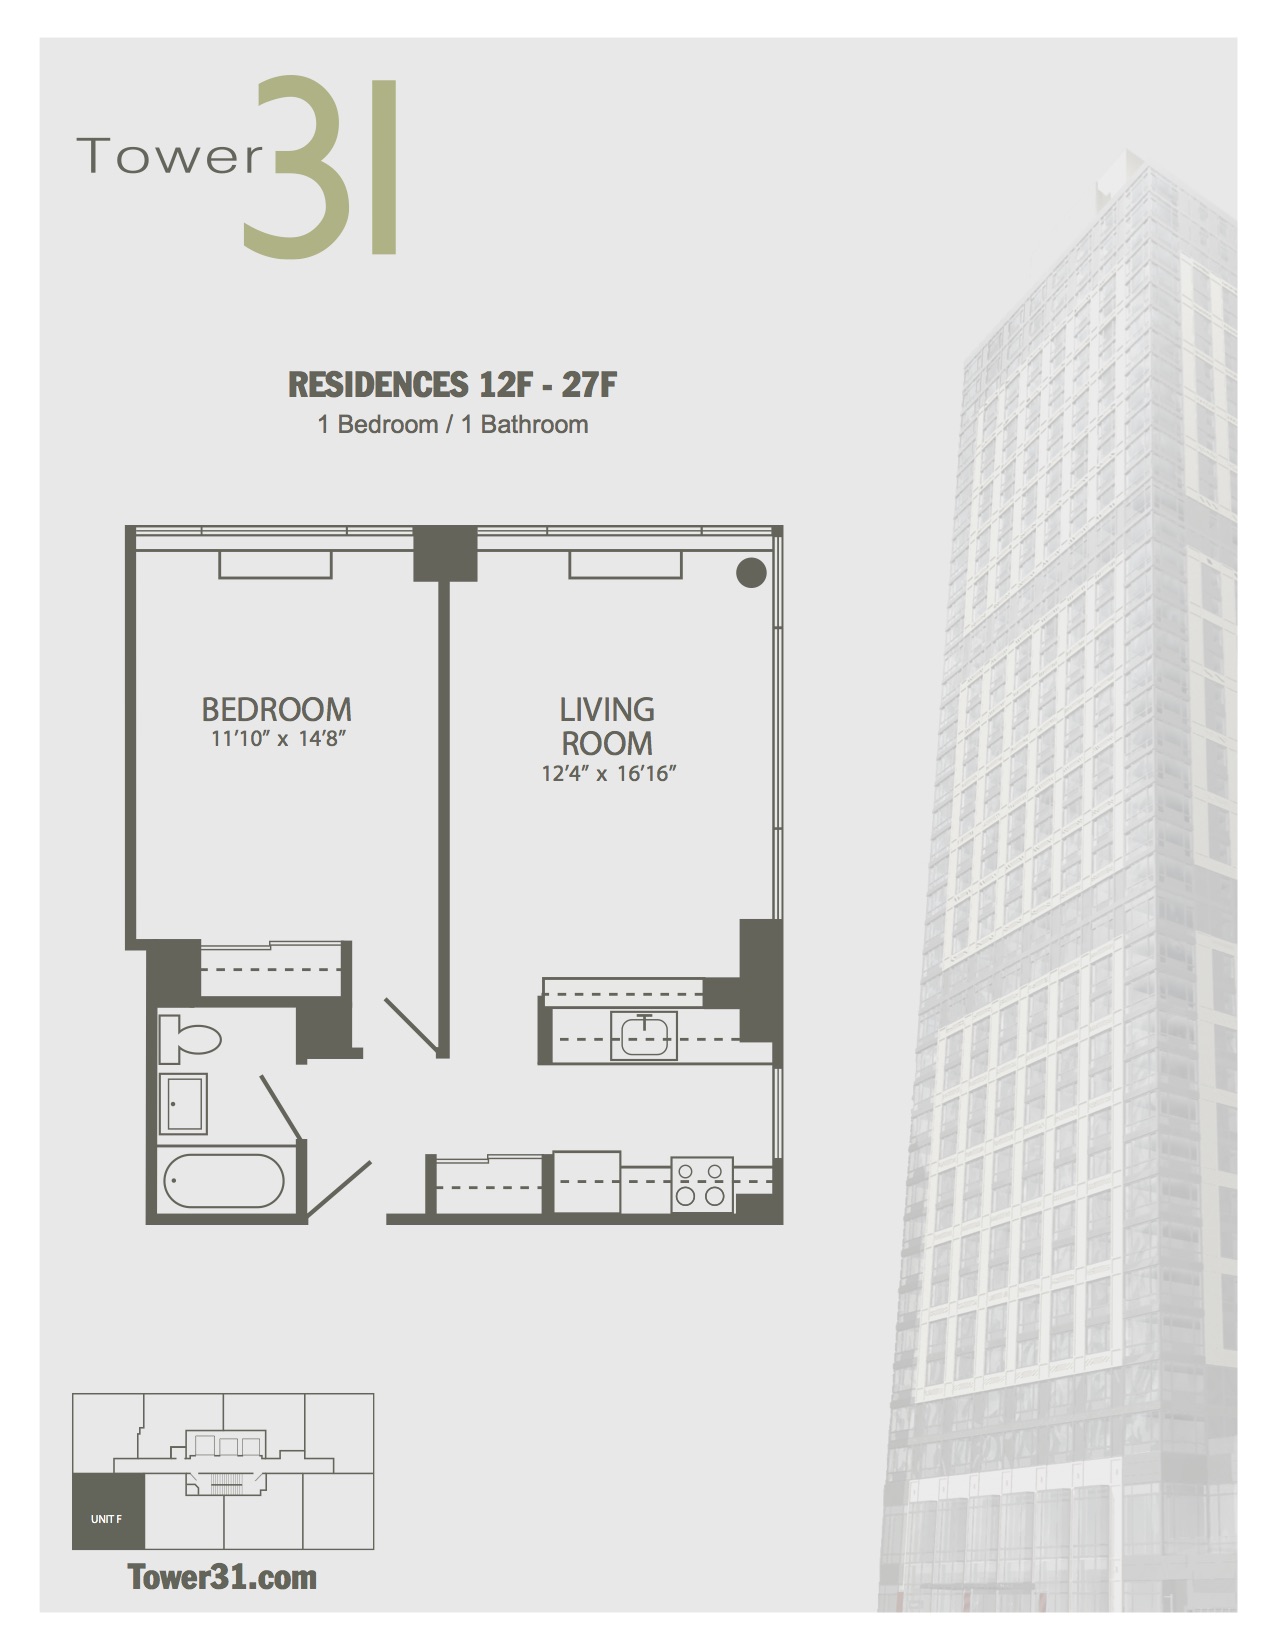 Residence F Floors 12-27